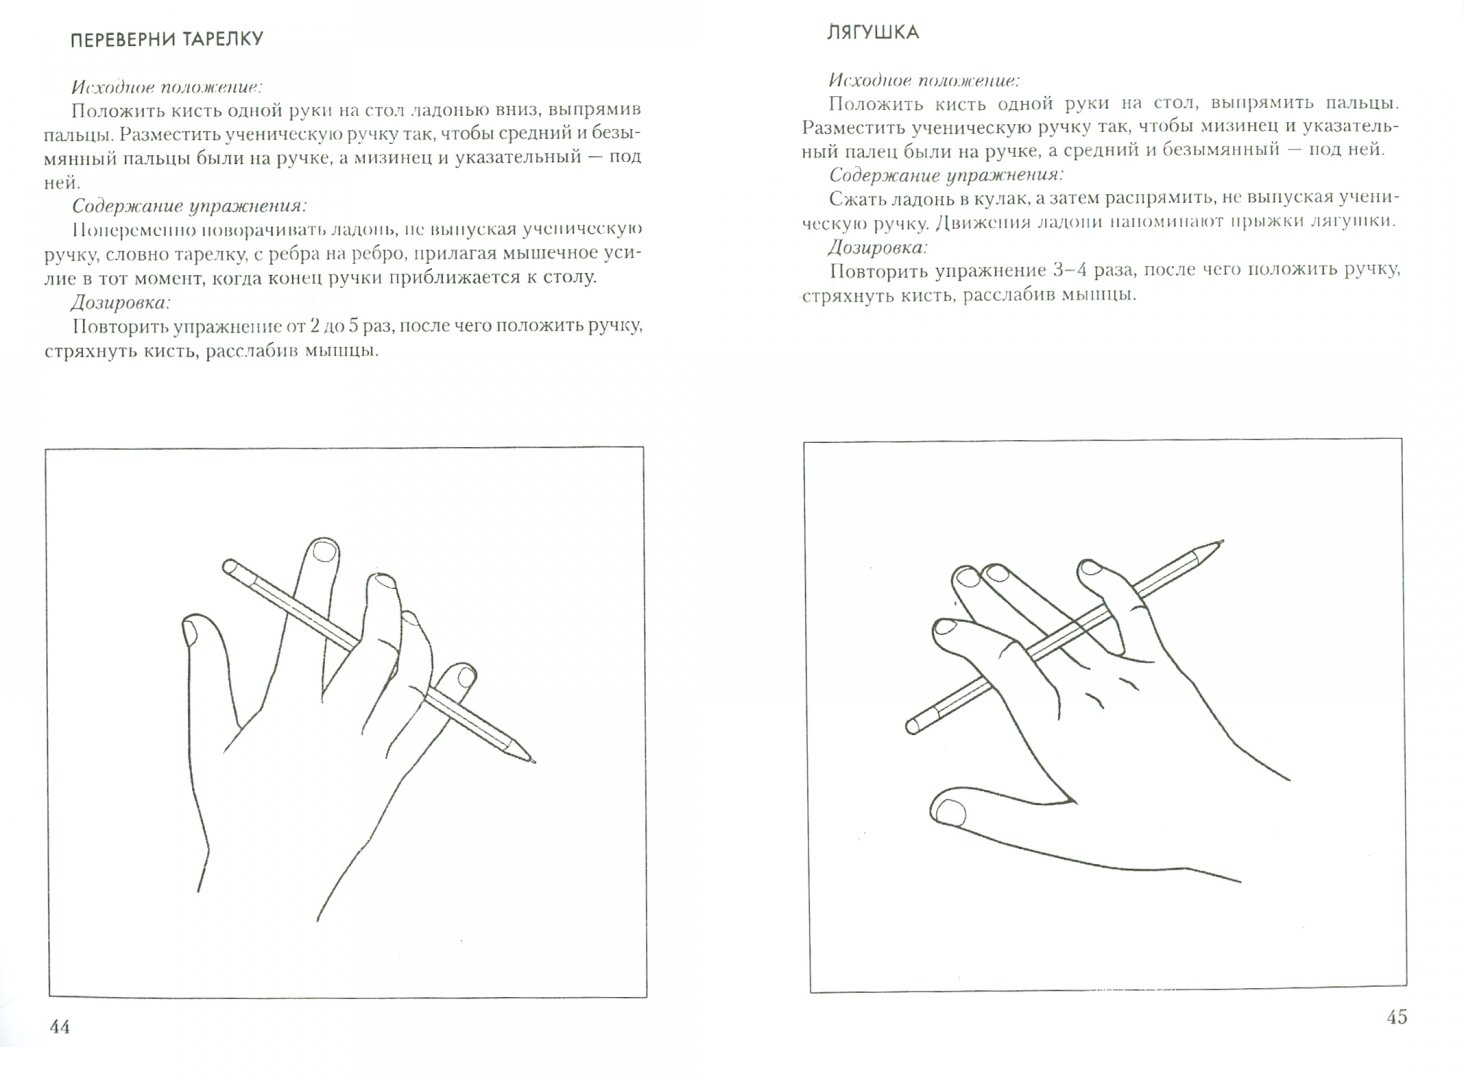 Переключение пальцев. Упражнения для развития моторики пальцев рук у детей. Нейропсихологические упражнения пальчиковые. Нейропсихологические упражнения для развития мелкой моторики. Нейропсихологические упражнения для рук для дошкольников.